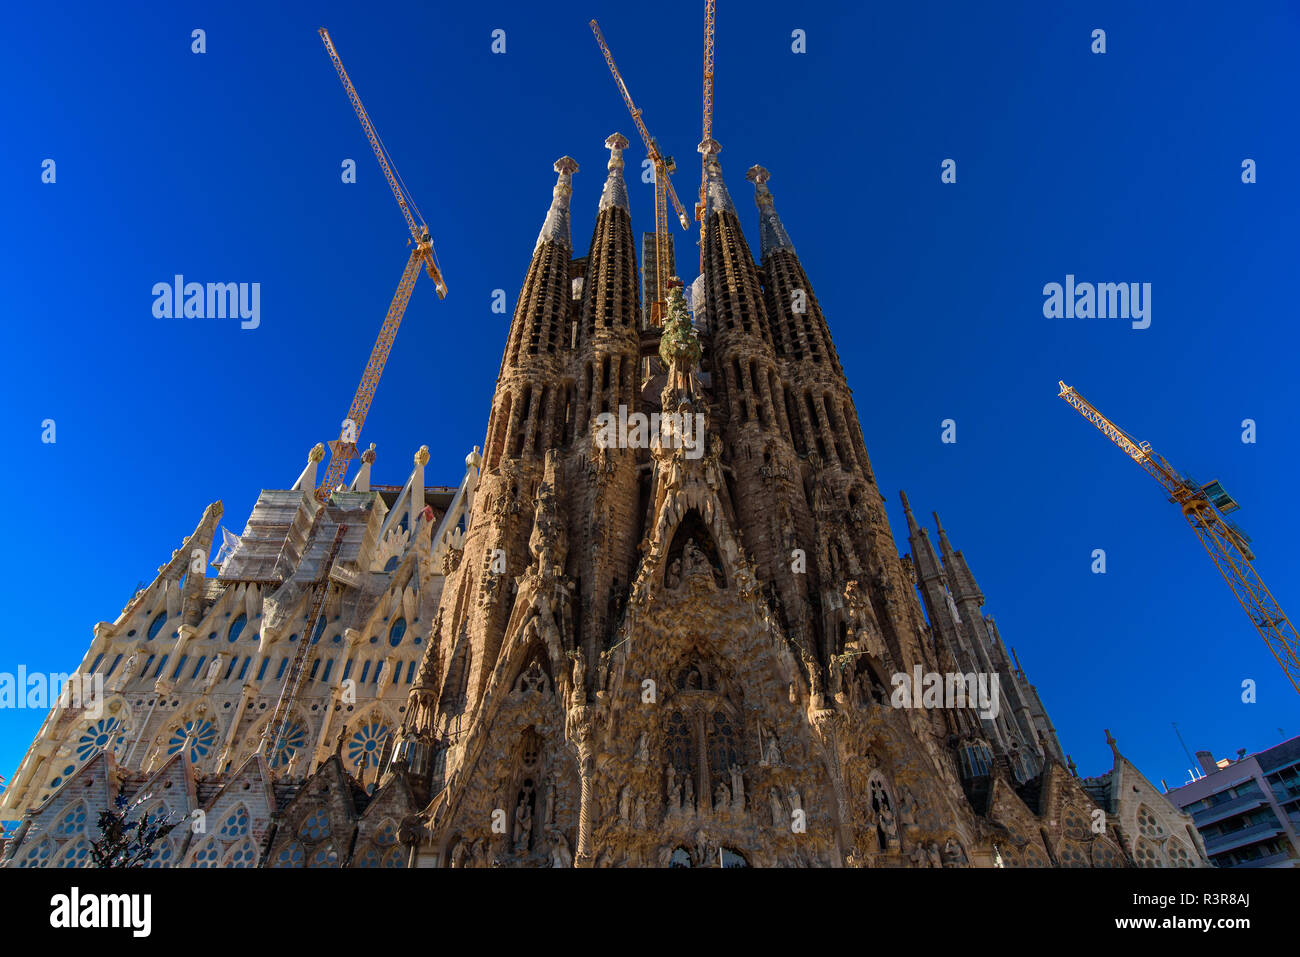 Façade de la Nativité de la Sagrada Familia, la cathédrale conçue par Gaudi à Barcelone, Espagne Banque D'Images